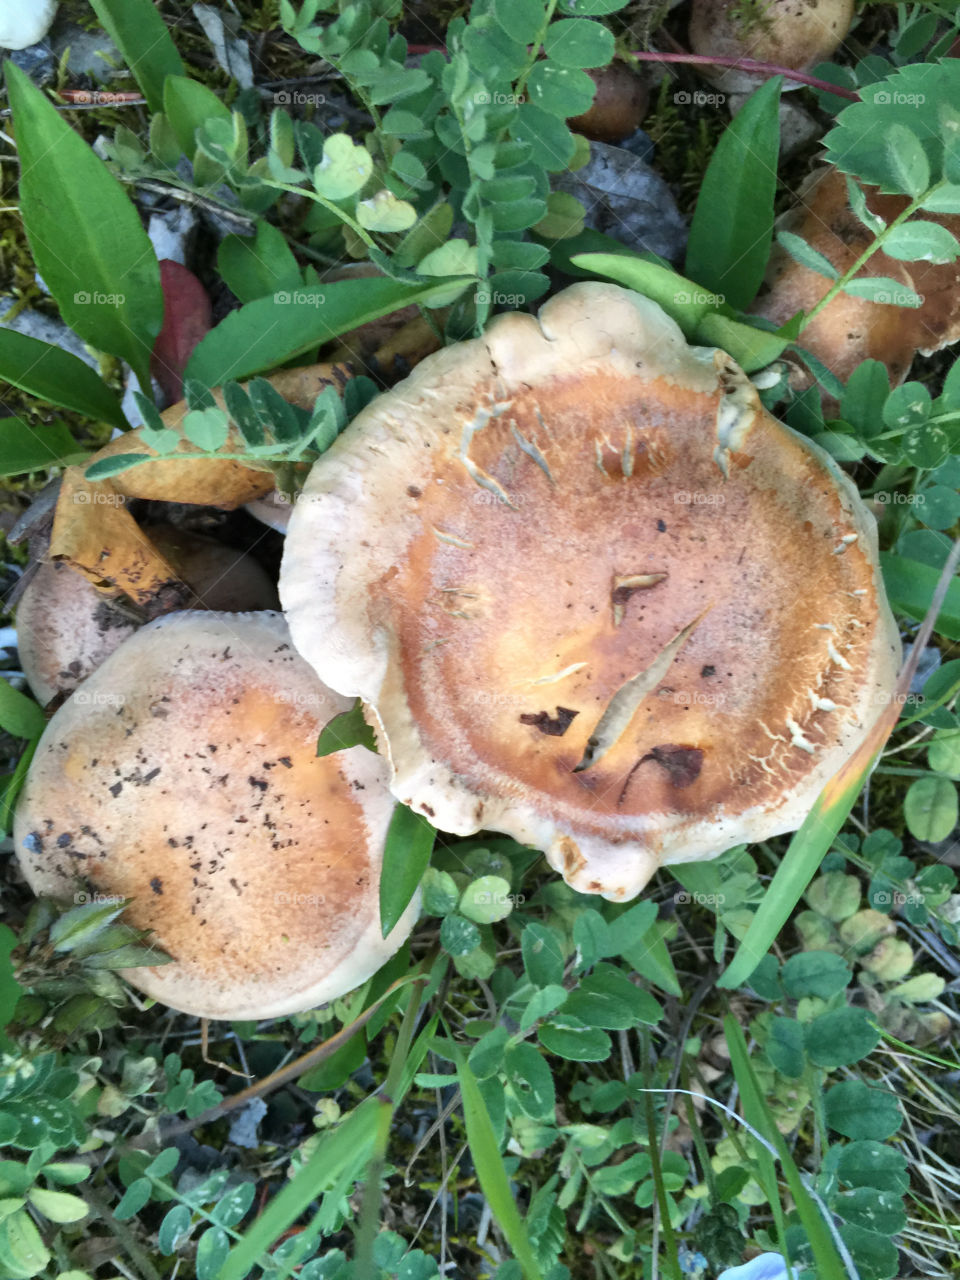 Pancake-shaped fungi growing by Lake Louise